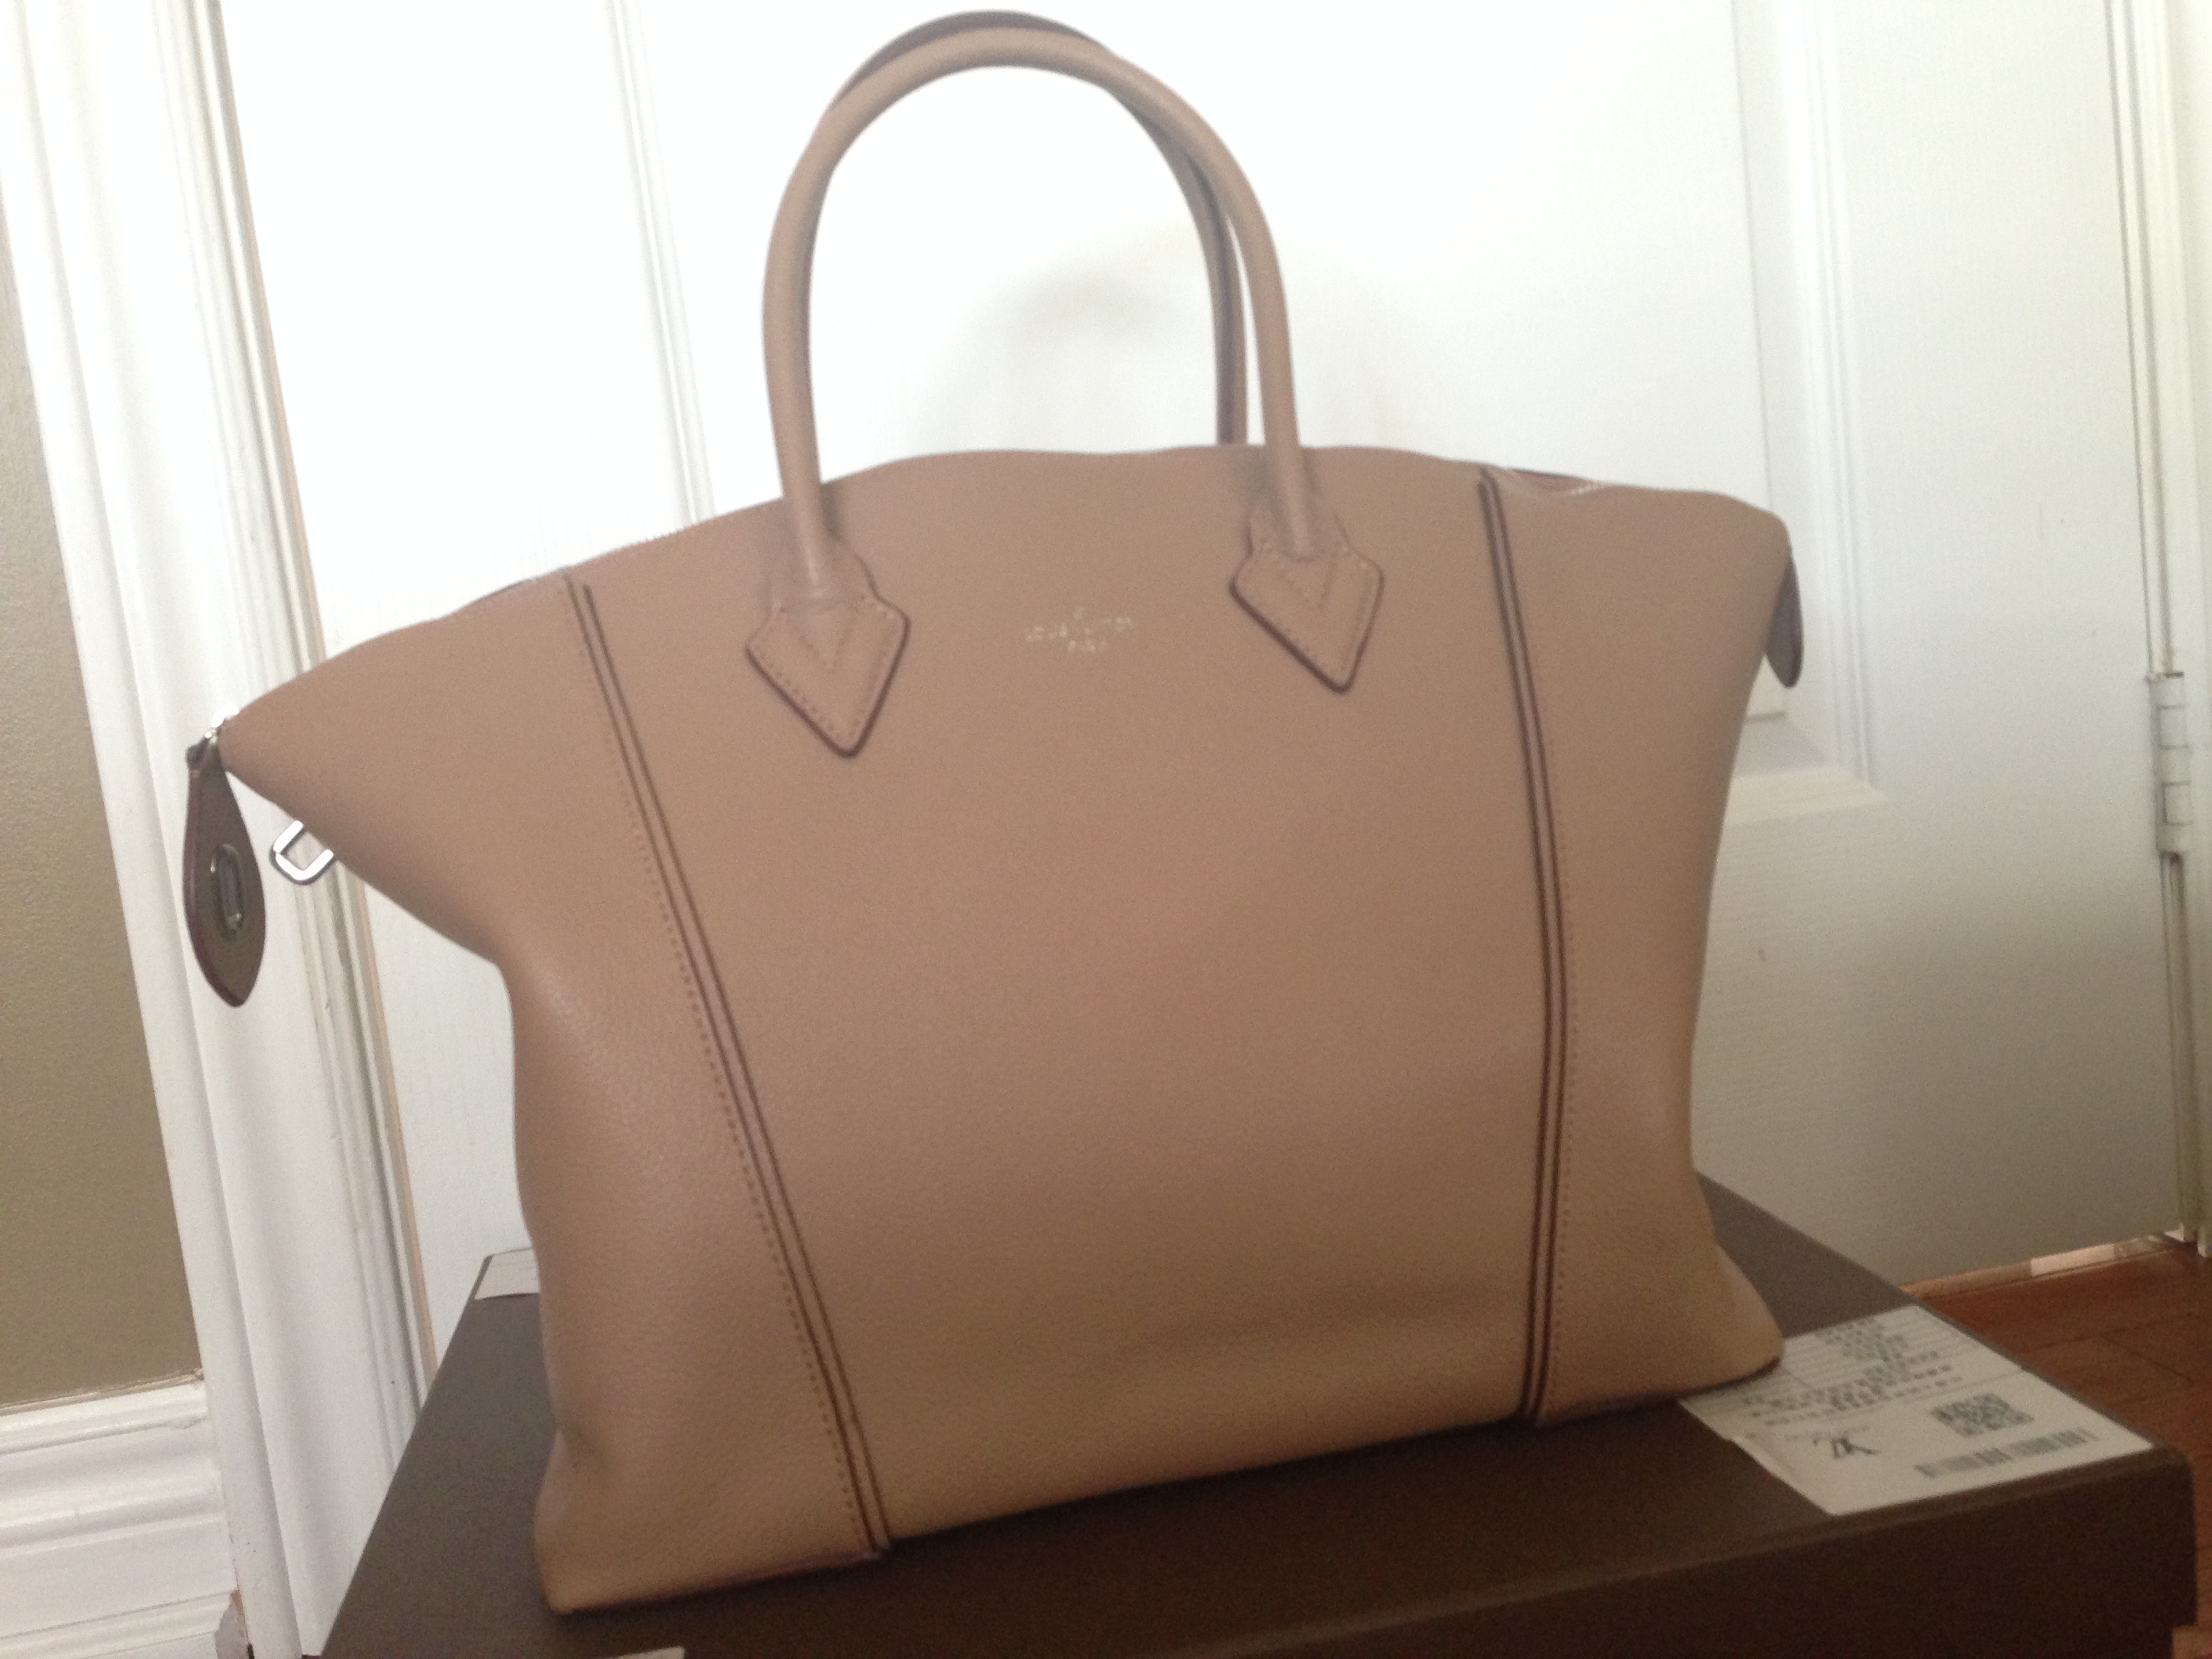 Replica Bags & Replica Handbag Reviews by thepursequeen | Reviewing designer handbags; one at a ...